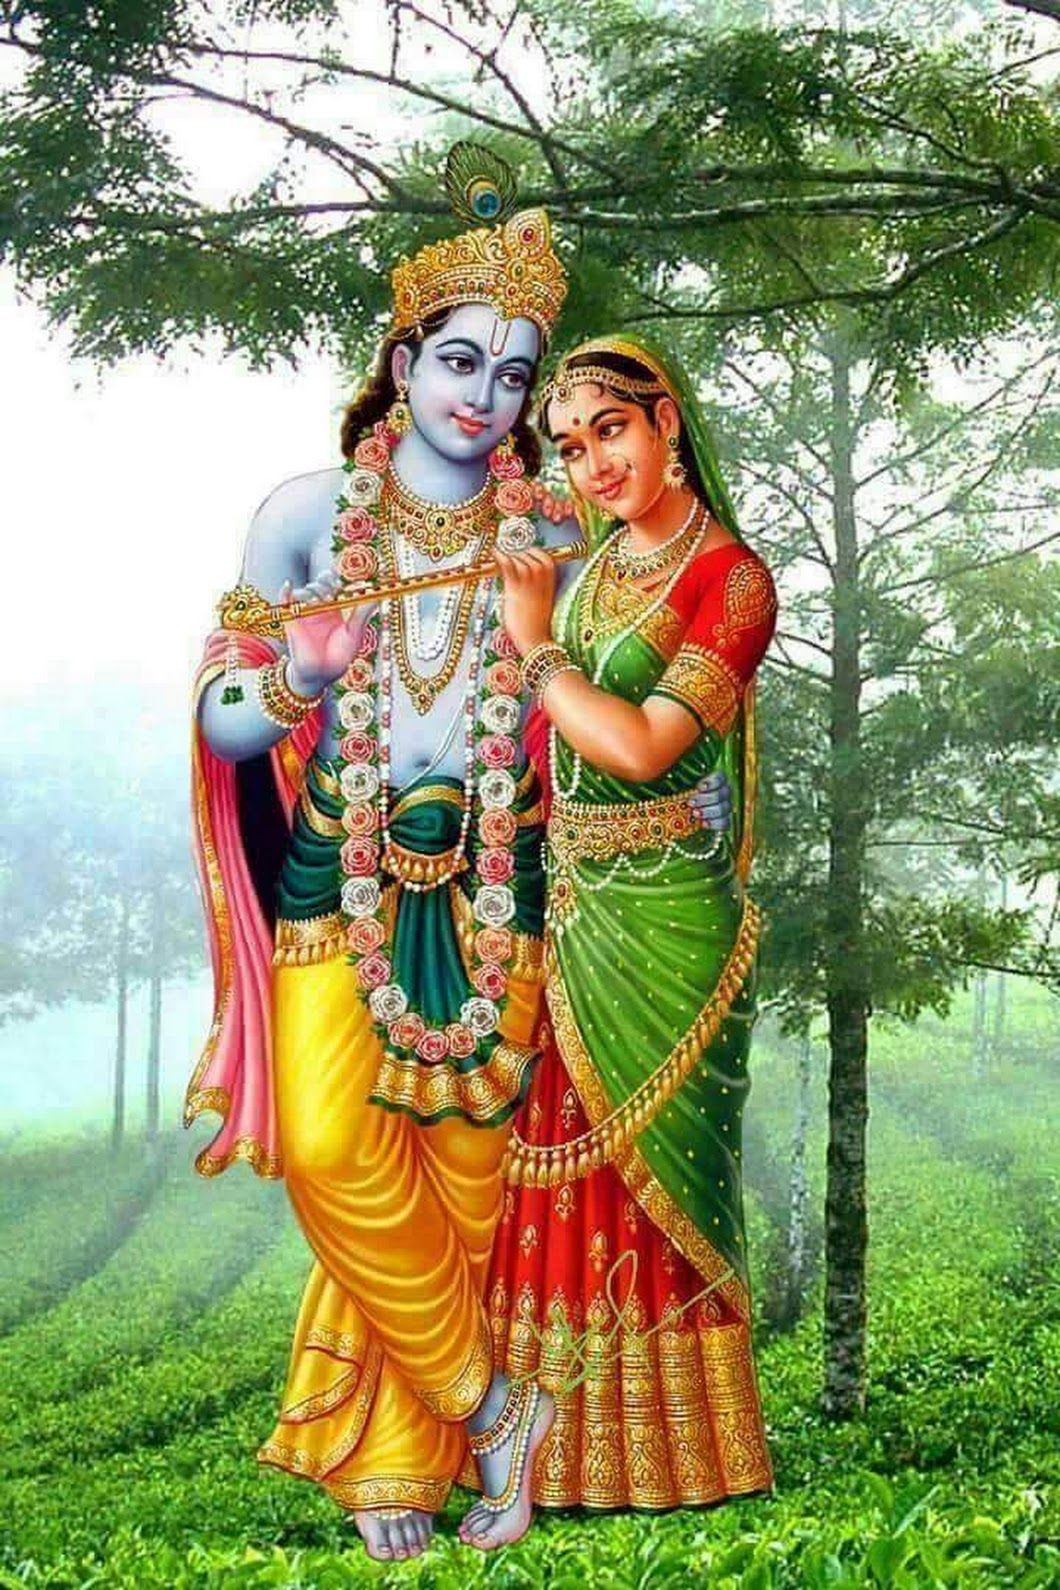 Lord Radha Krishna Image, HD Love Photo and 3D Pics (2021). Happy New Year 2021